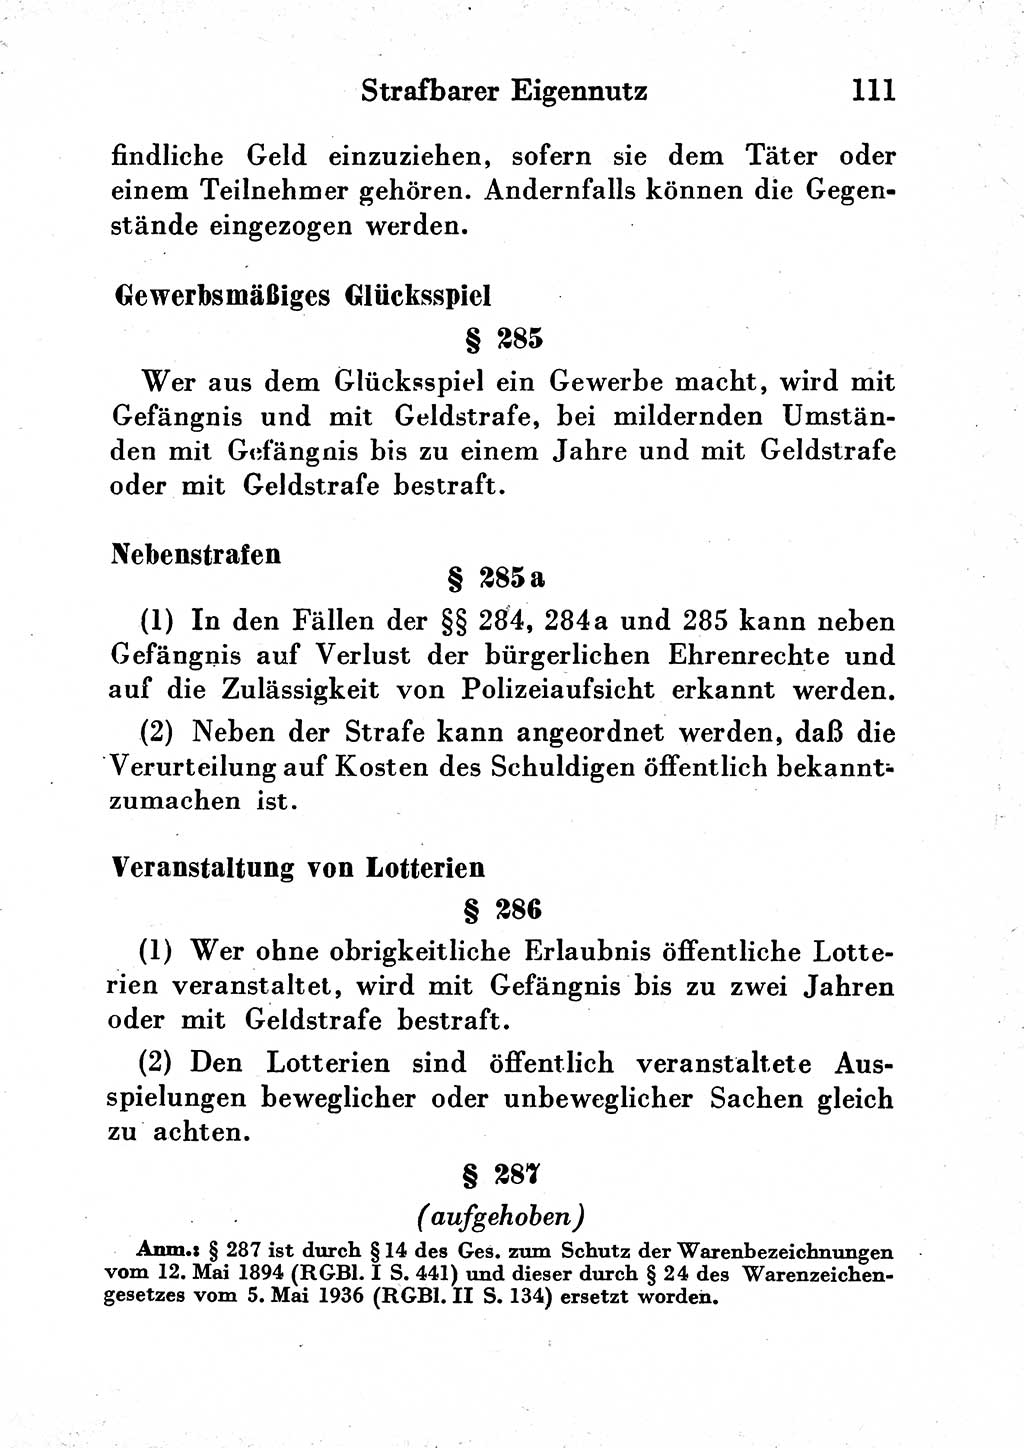 Strafgesetzbuch (StGB) und andere Strafgesetze [Deutsche Demokratische Republik (DDR)] 1954, Seite 111 (StGB Strafges. DDR 1954, S. 111)